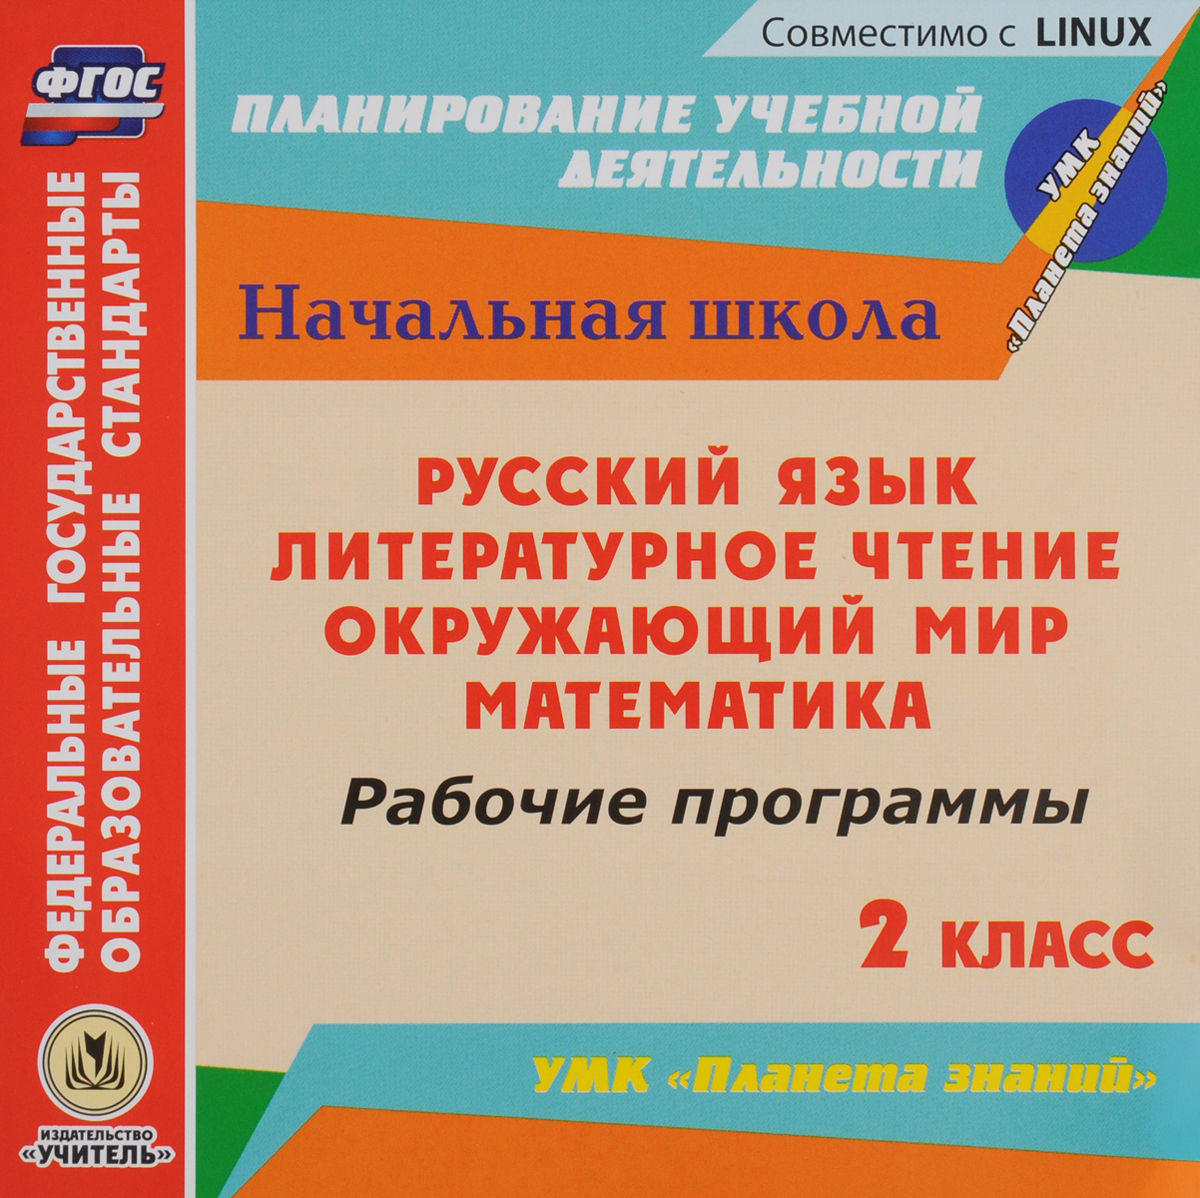 Русский язык: учебник для 8 класса с.г бархударов и др м.:просвещение 2003 просмотр